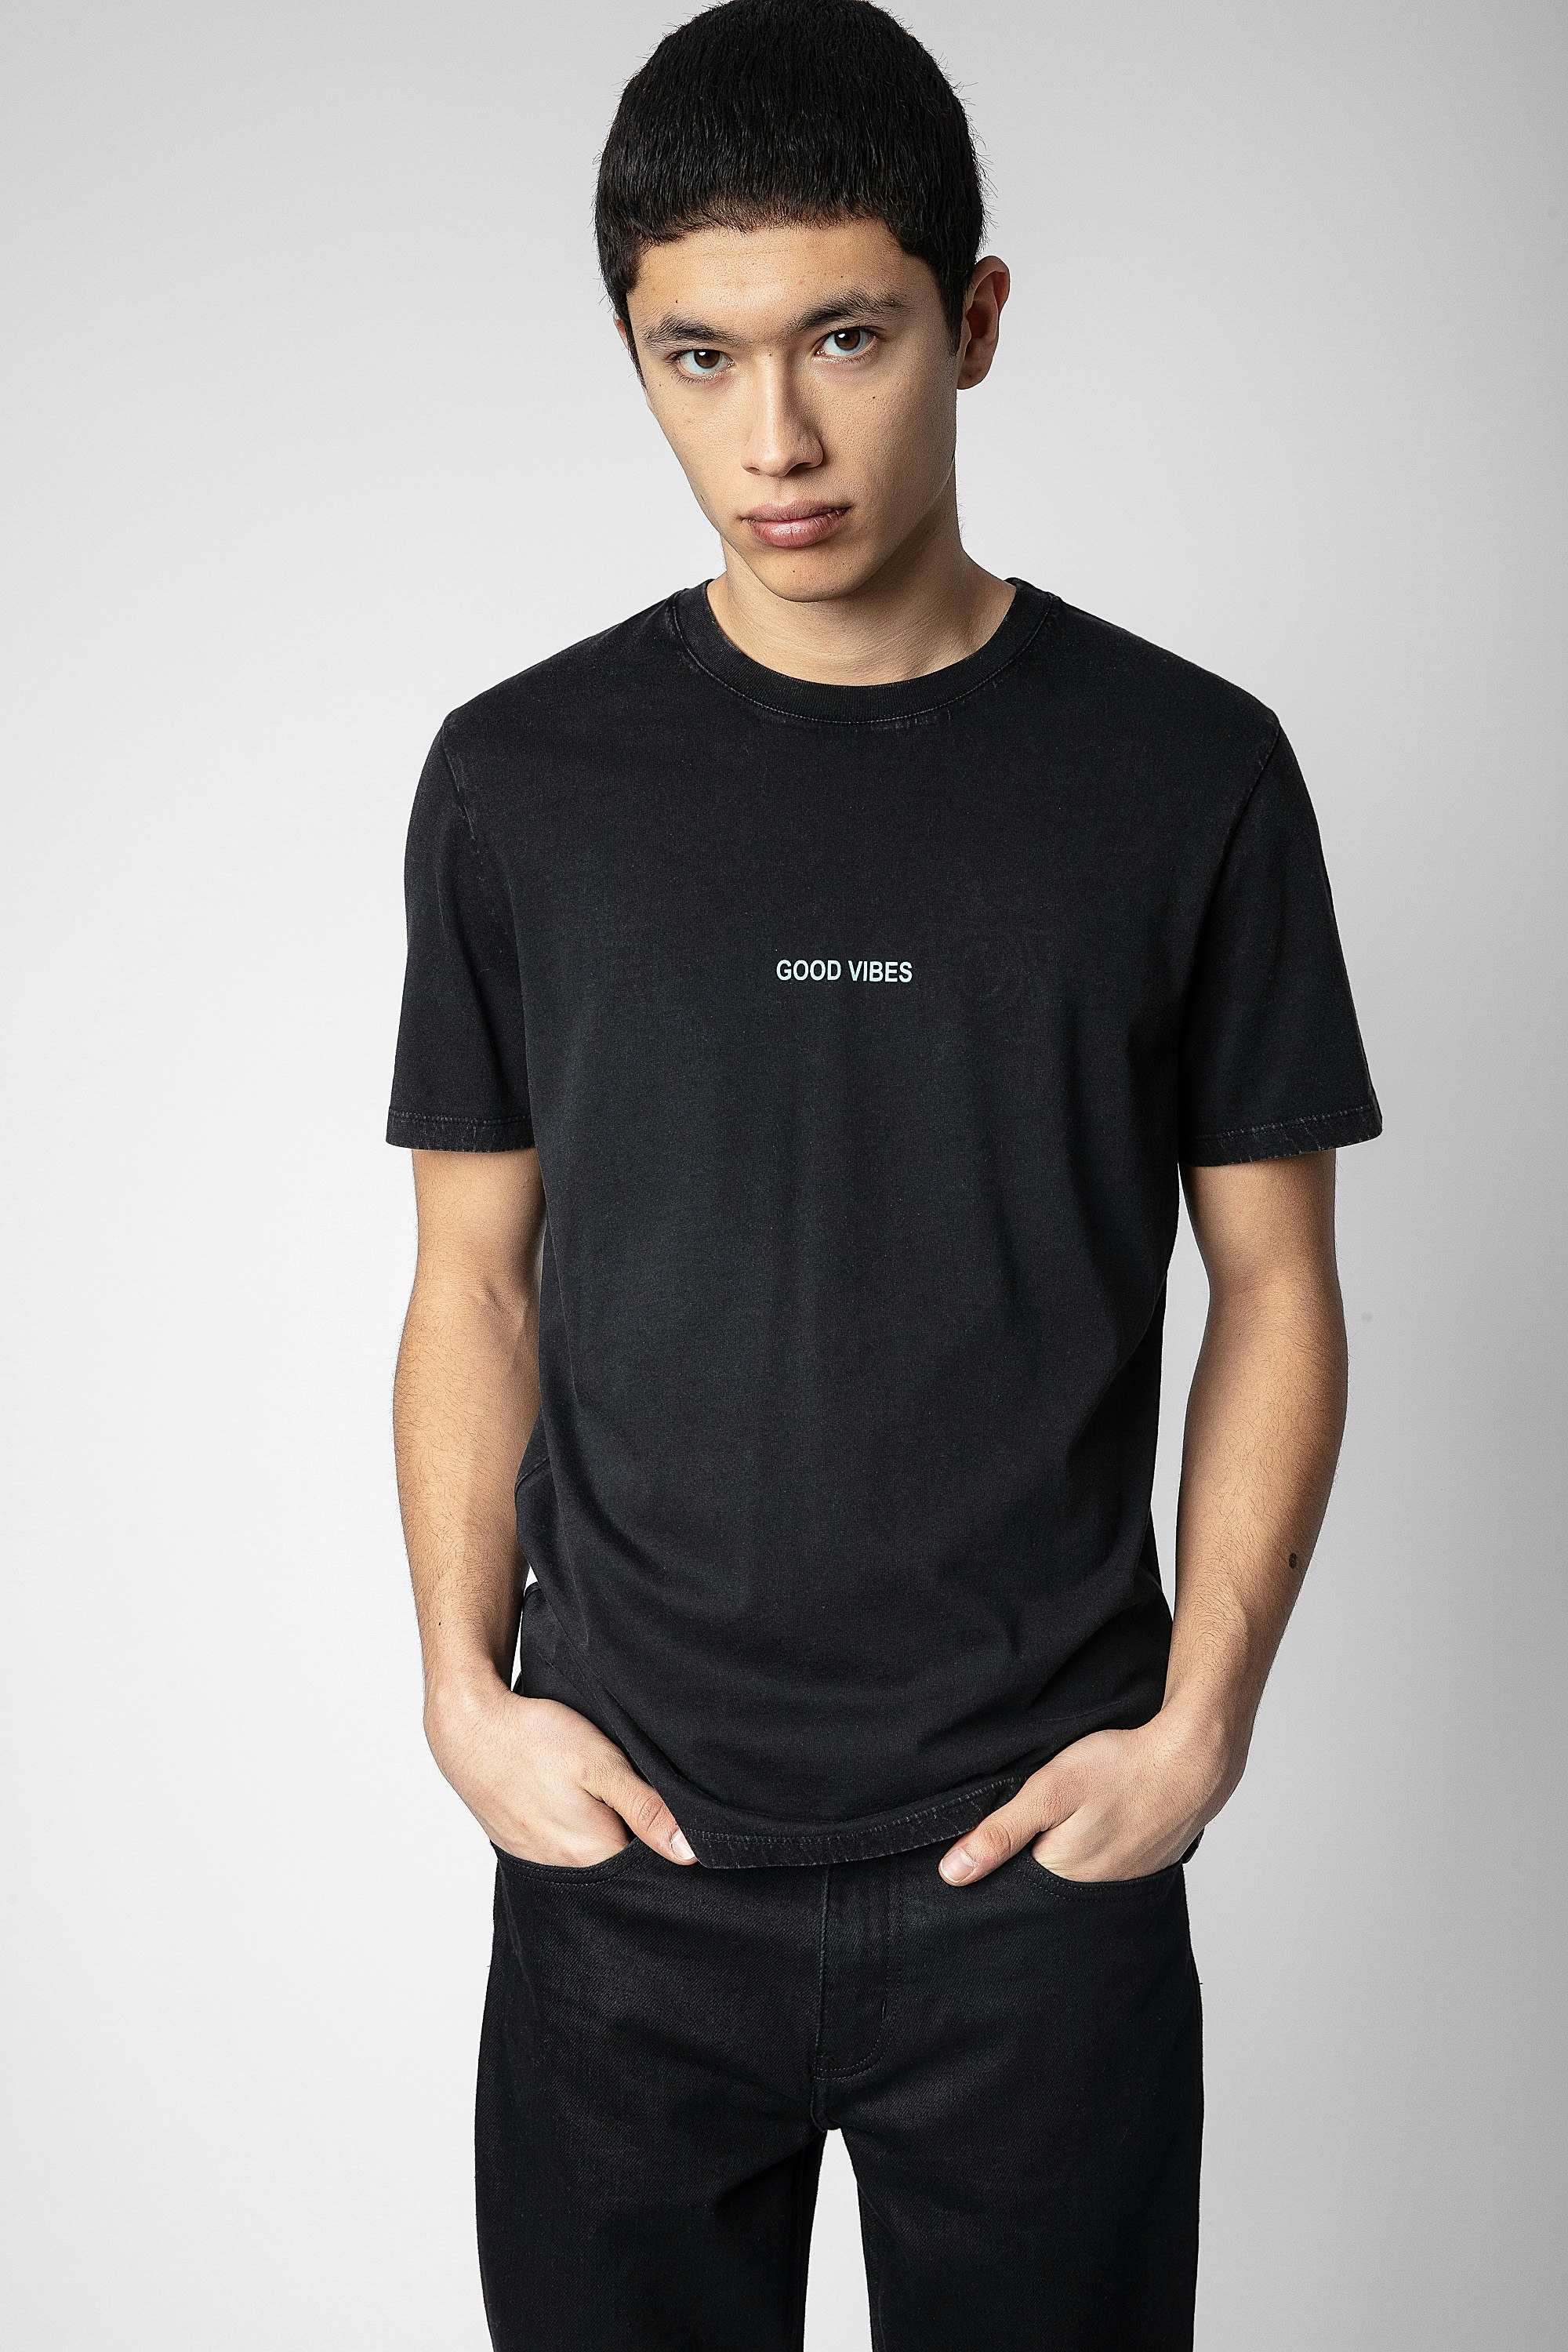 T-shirt Ted - T-shirt en coton noir orné du message "Good Vibes" à l'avant, motifs ailes et Happy face Zadig au dos.